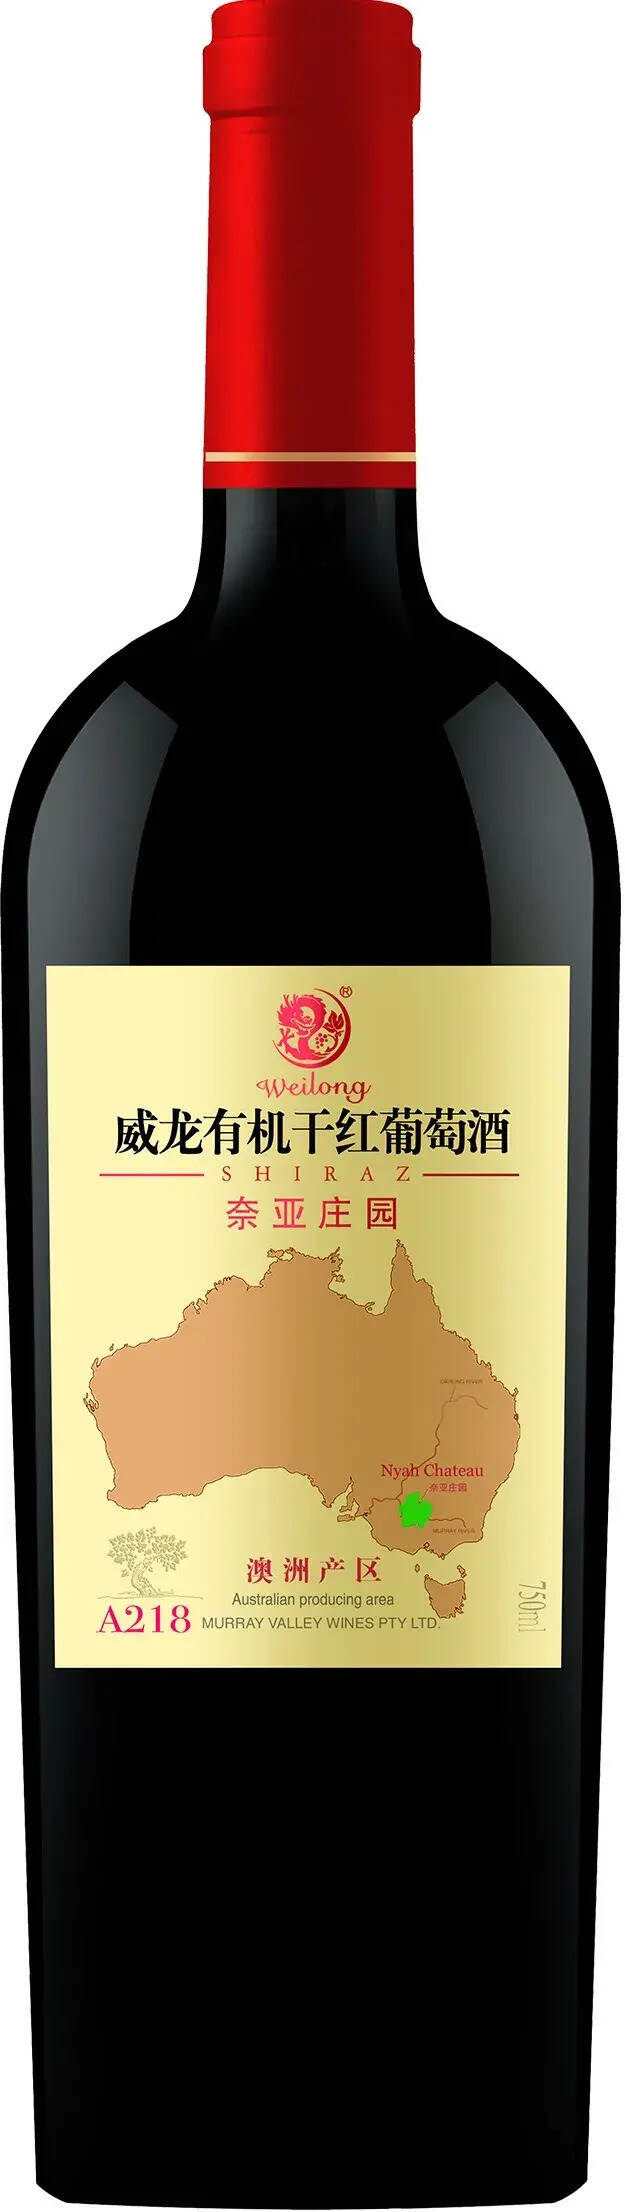 2021布鲁塞尔国际葡萄酒大赛，这款中国有机葡萄酒获1金3银